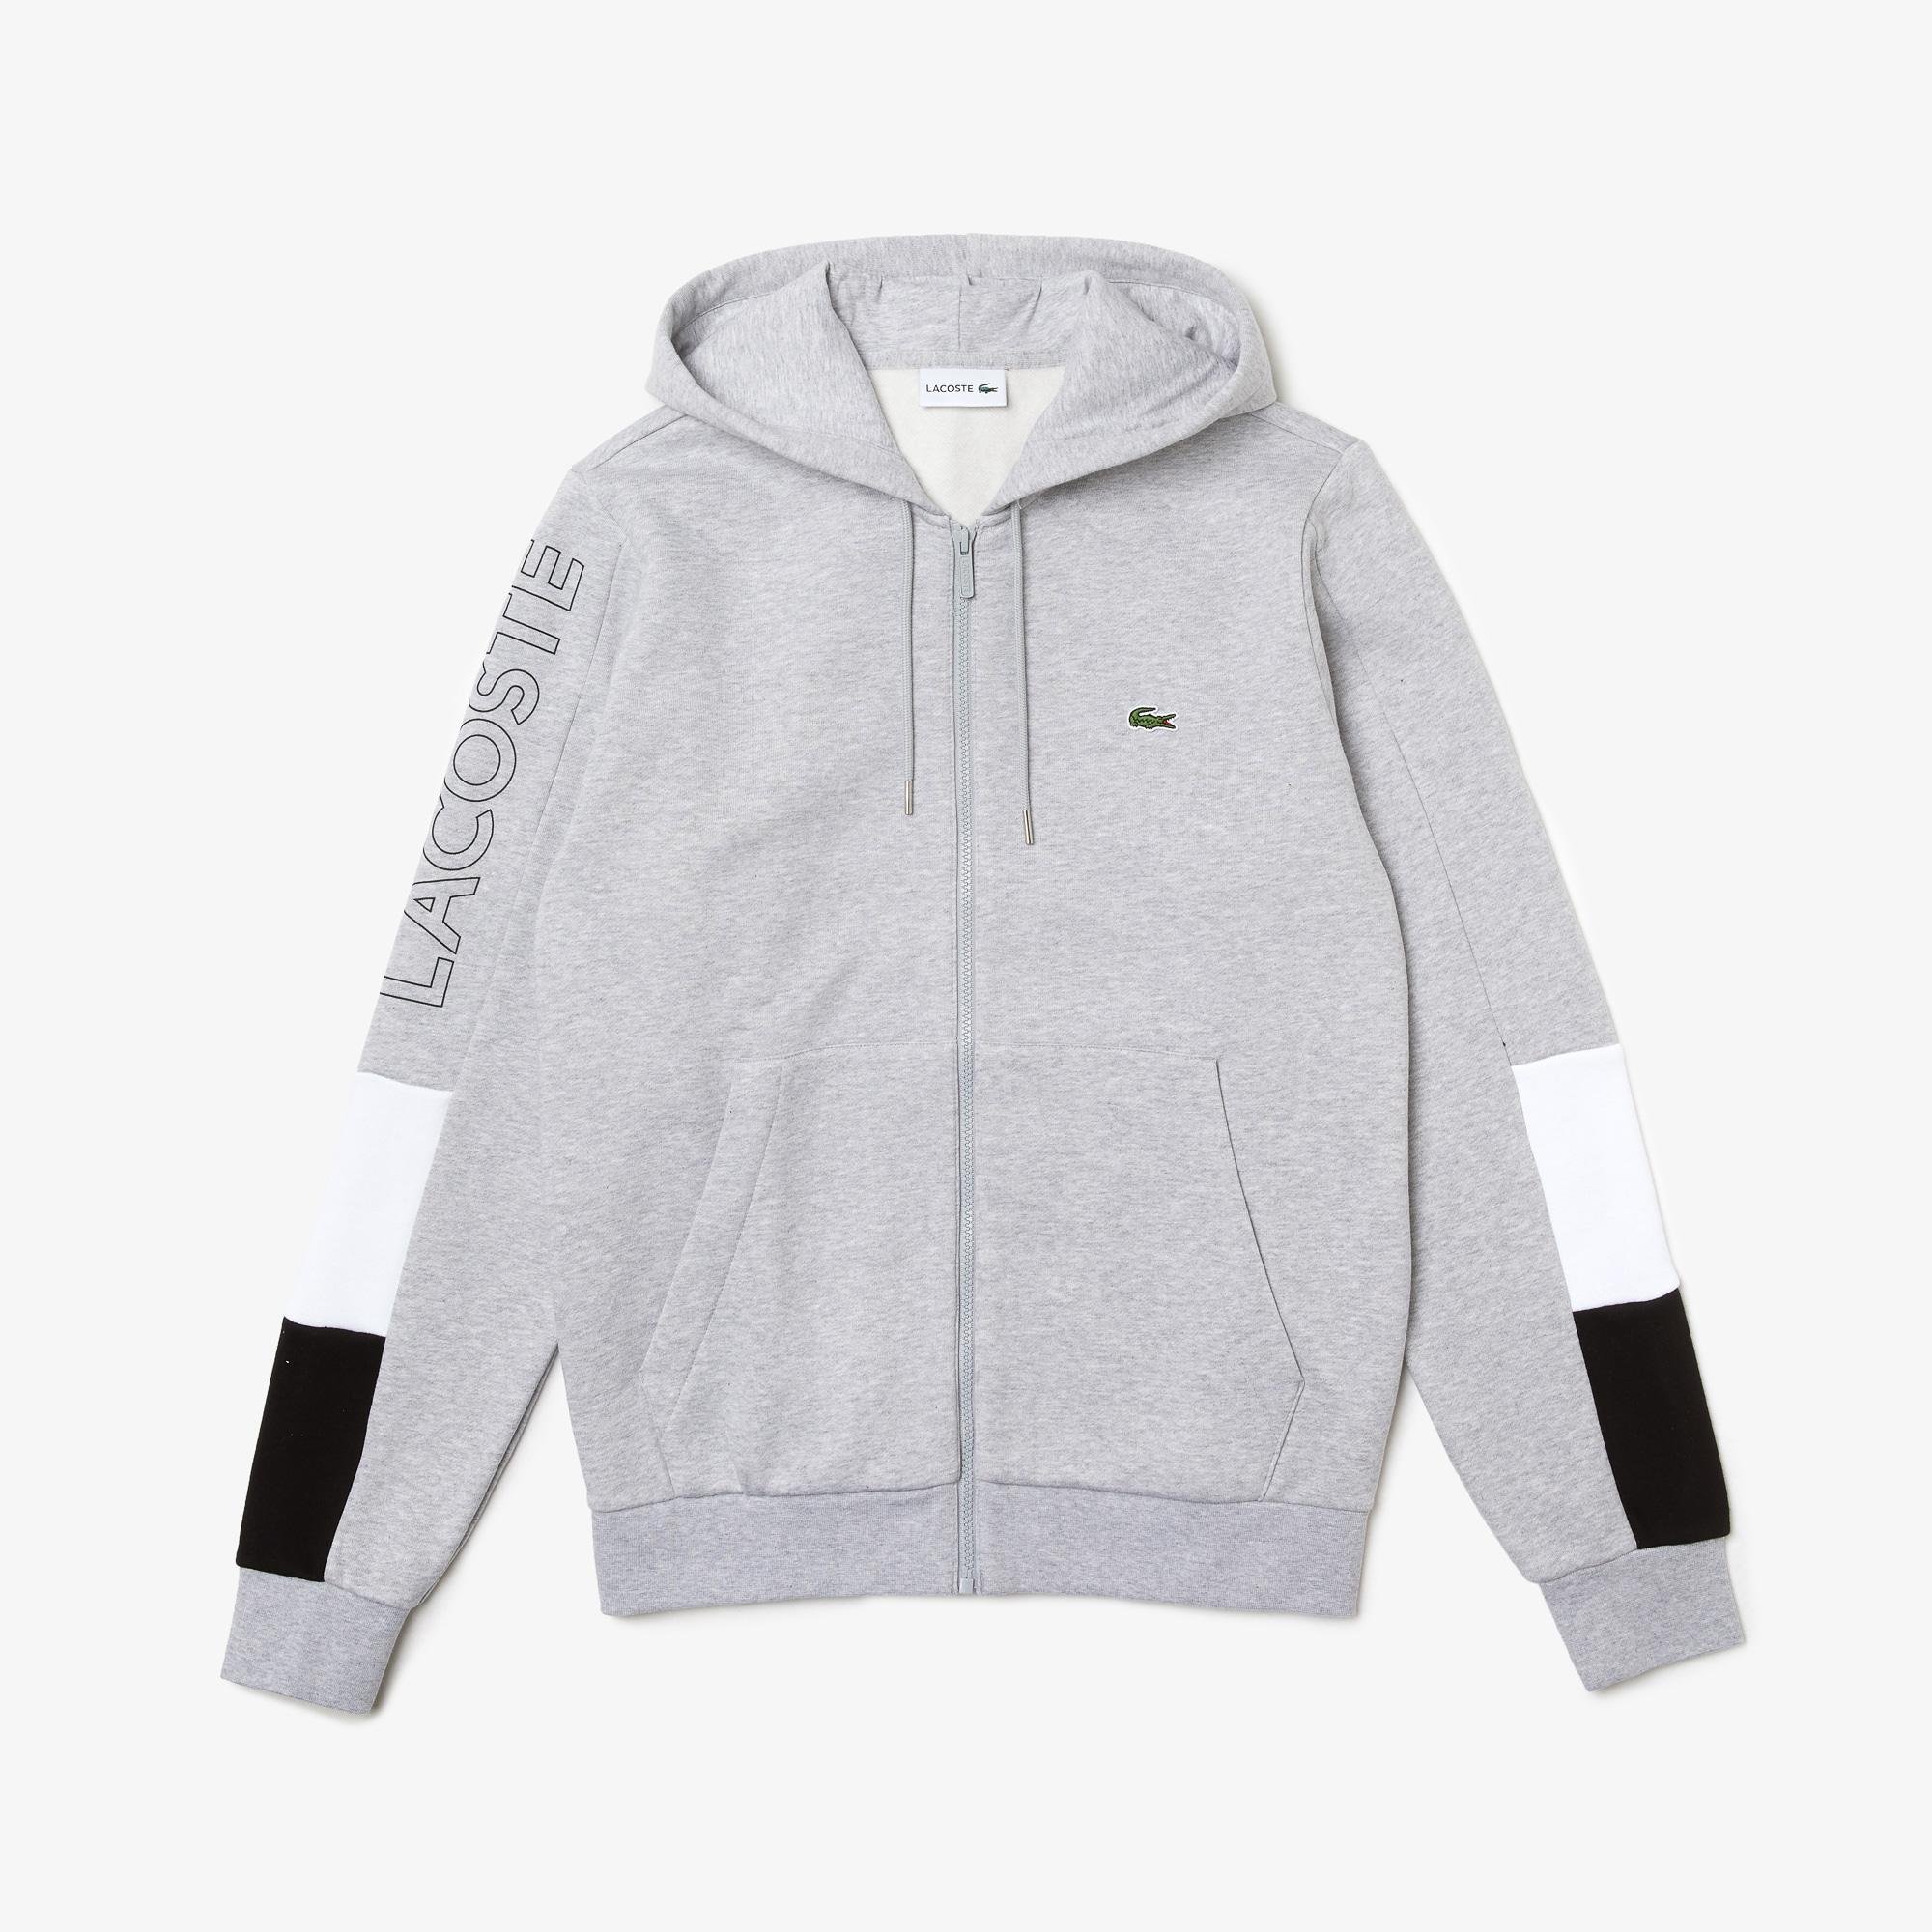 Lacoste Men’s Hooded Colorblock Fleece Zip Sweatshirt